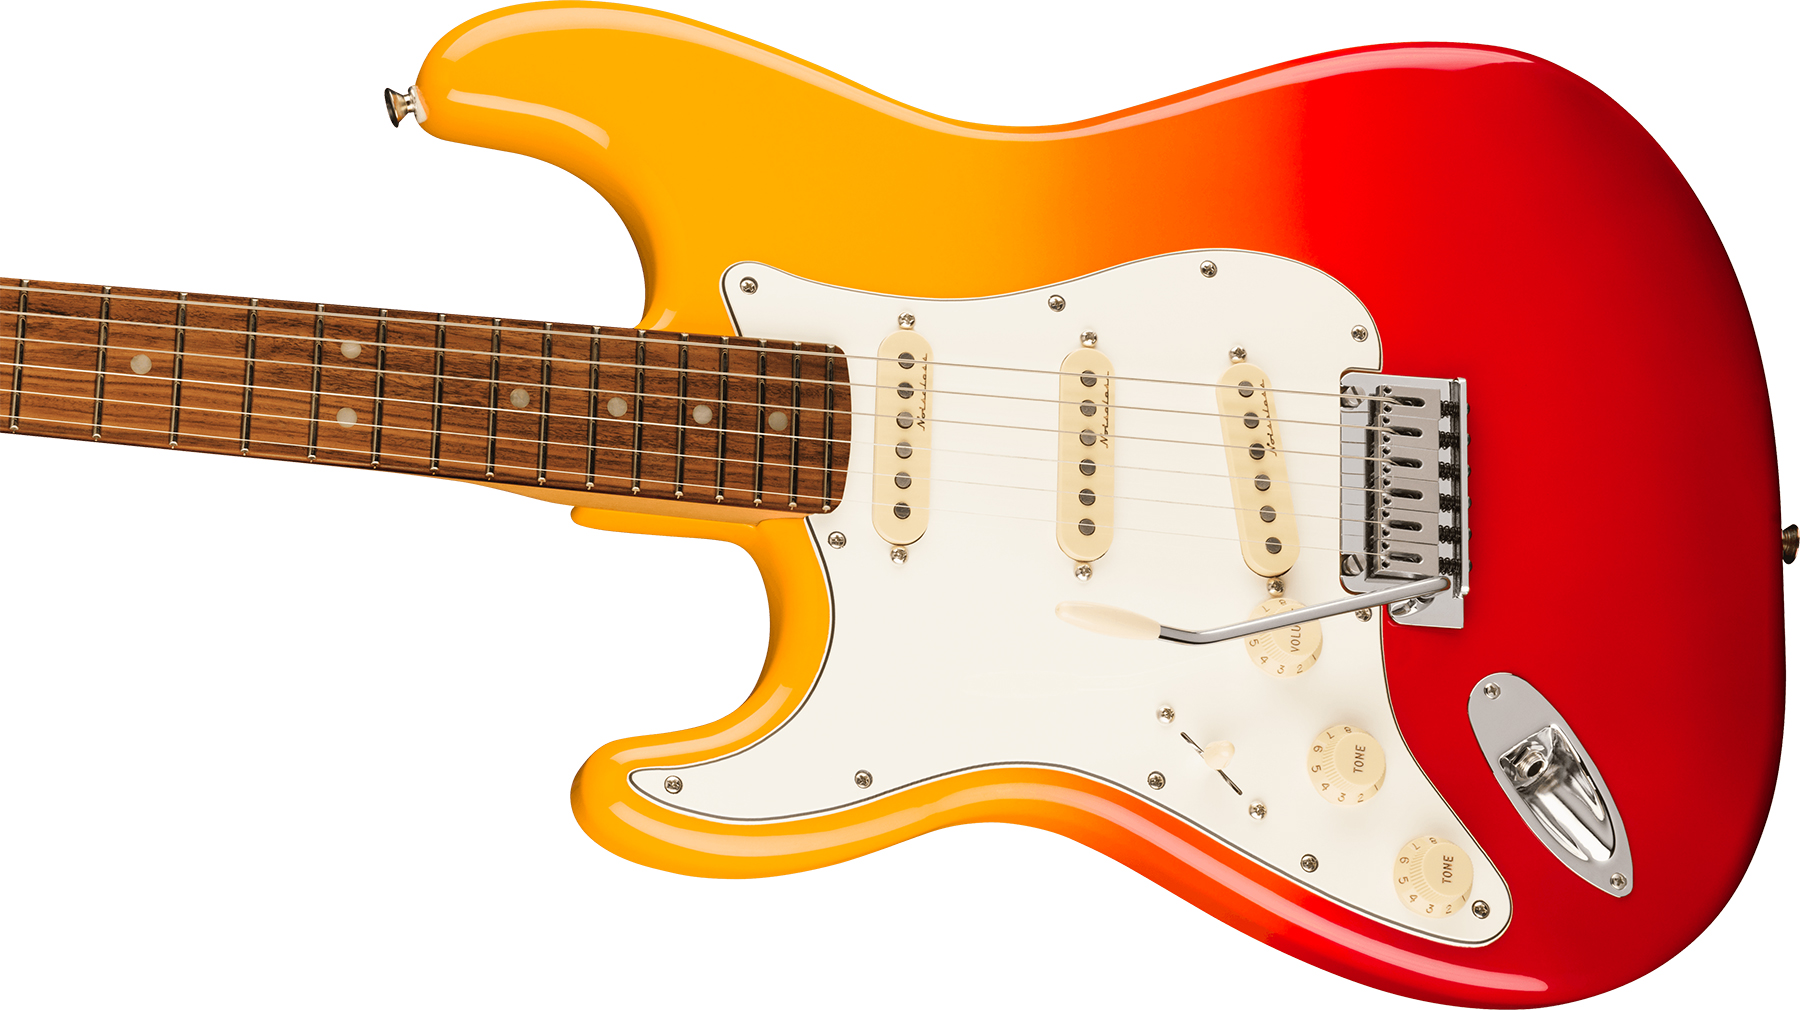 Fender Strat Player Plus Lh Gaucher Mex 3s Trem Pf - Tequila Sunrise - E-Gitarre für Linkshänder - Variation 2